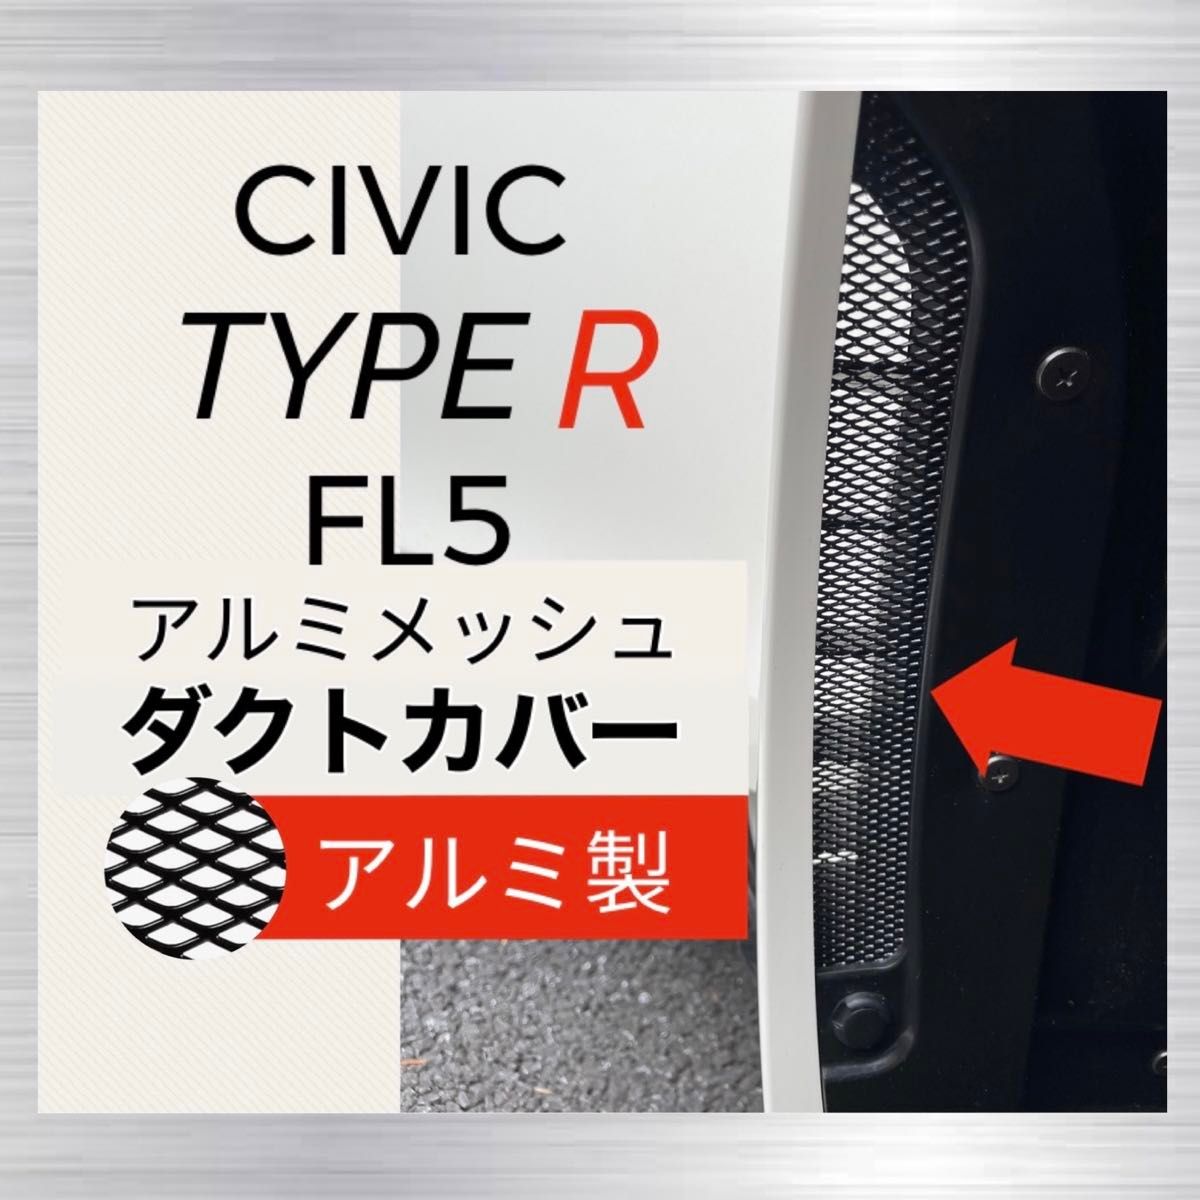 【アルミ製】FL5 シビックタイプR ダクトカバー　2枚セット